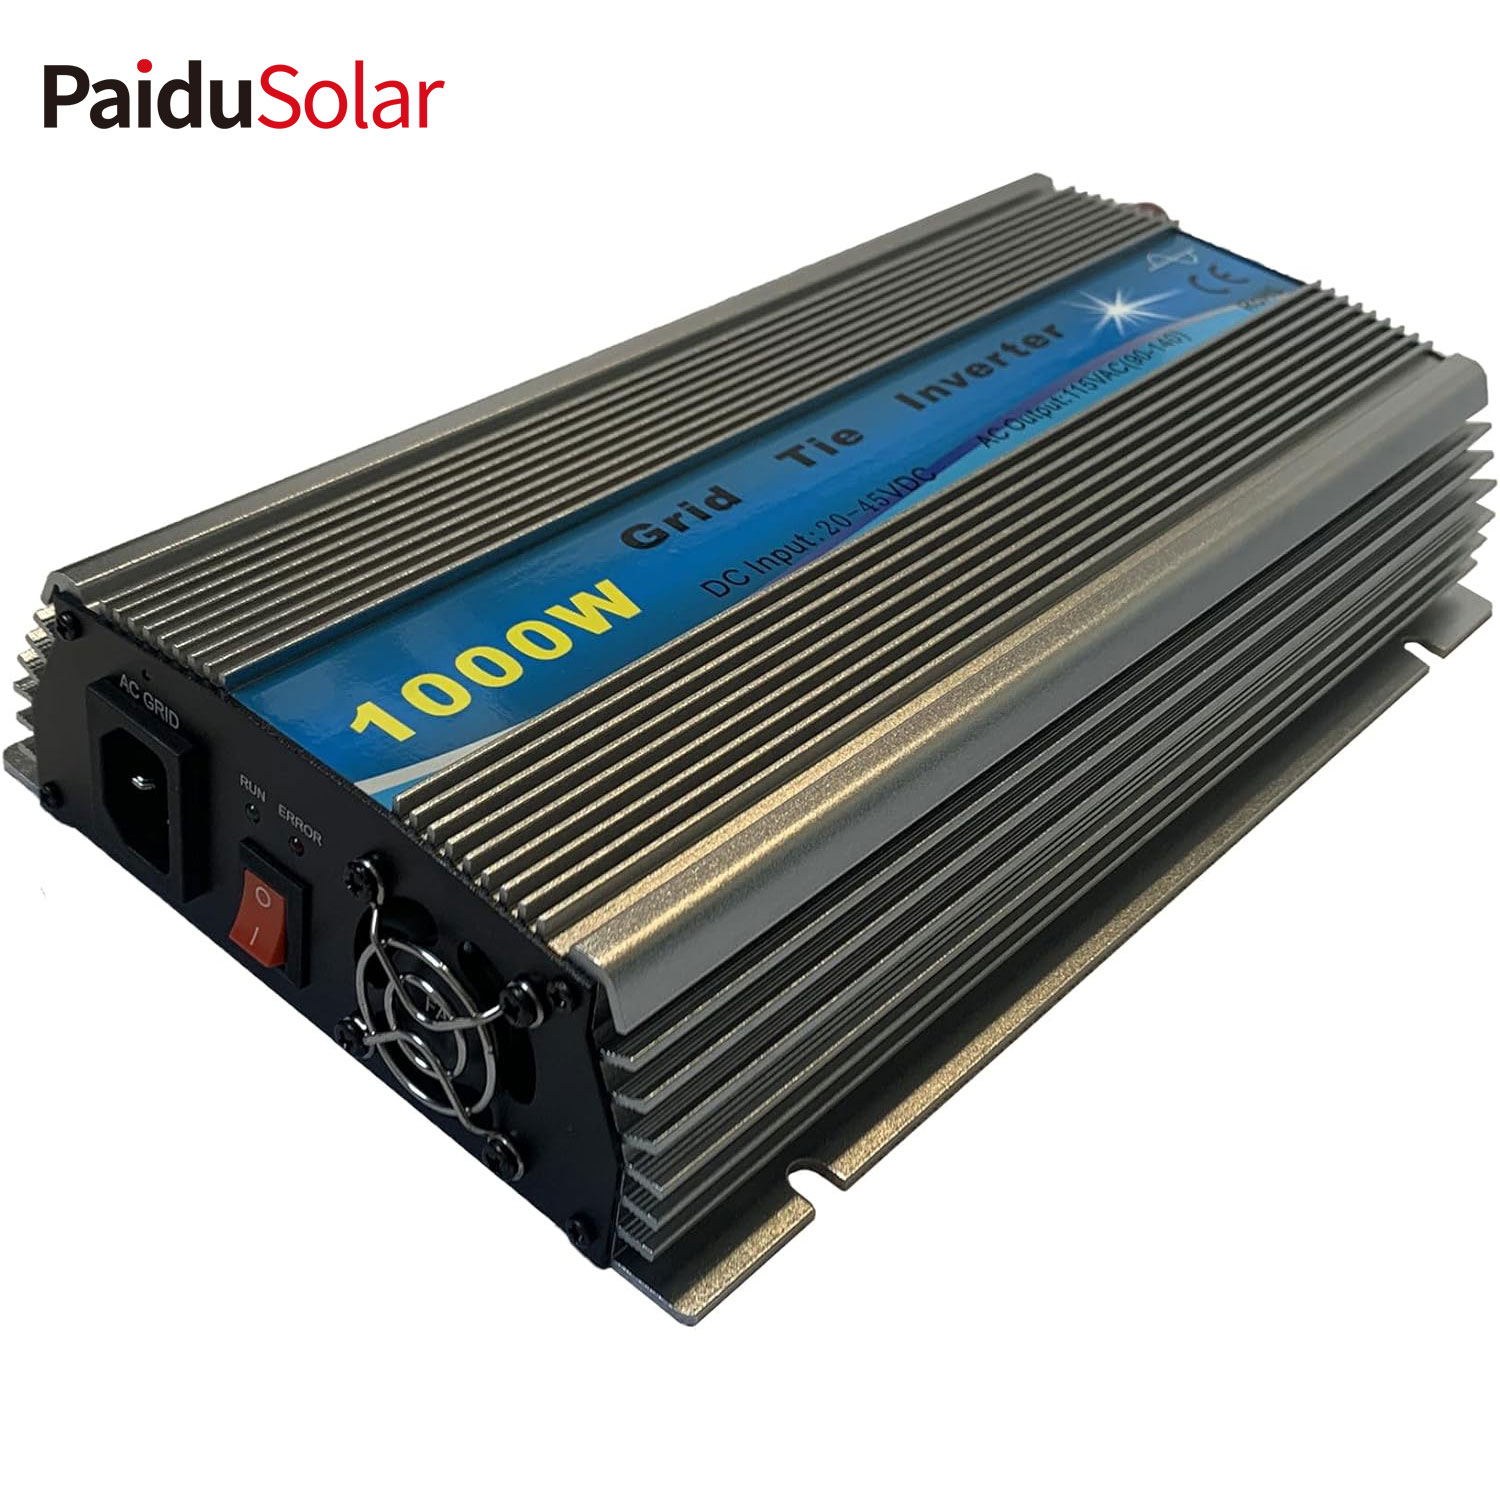 PaiduSolar 1000W inwerter sieciowy z możliwością układania w stosy czysta fala sinusoidalna energia słoneczna do panelu słonecznego 24V 30V 36V